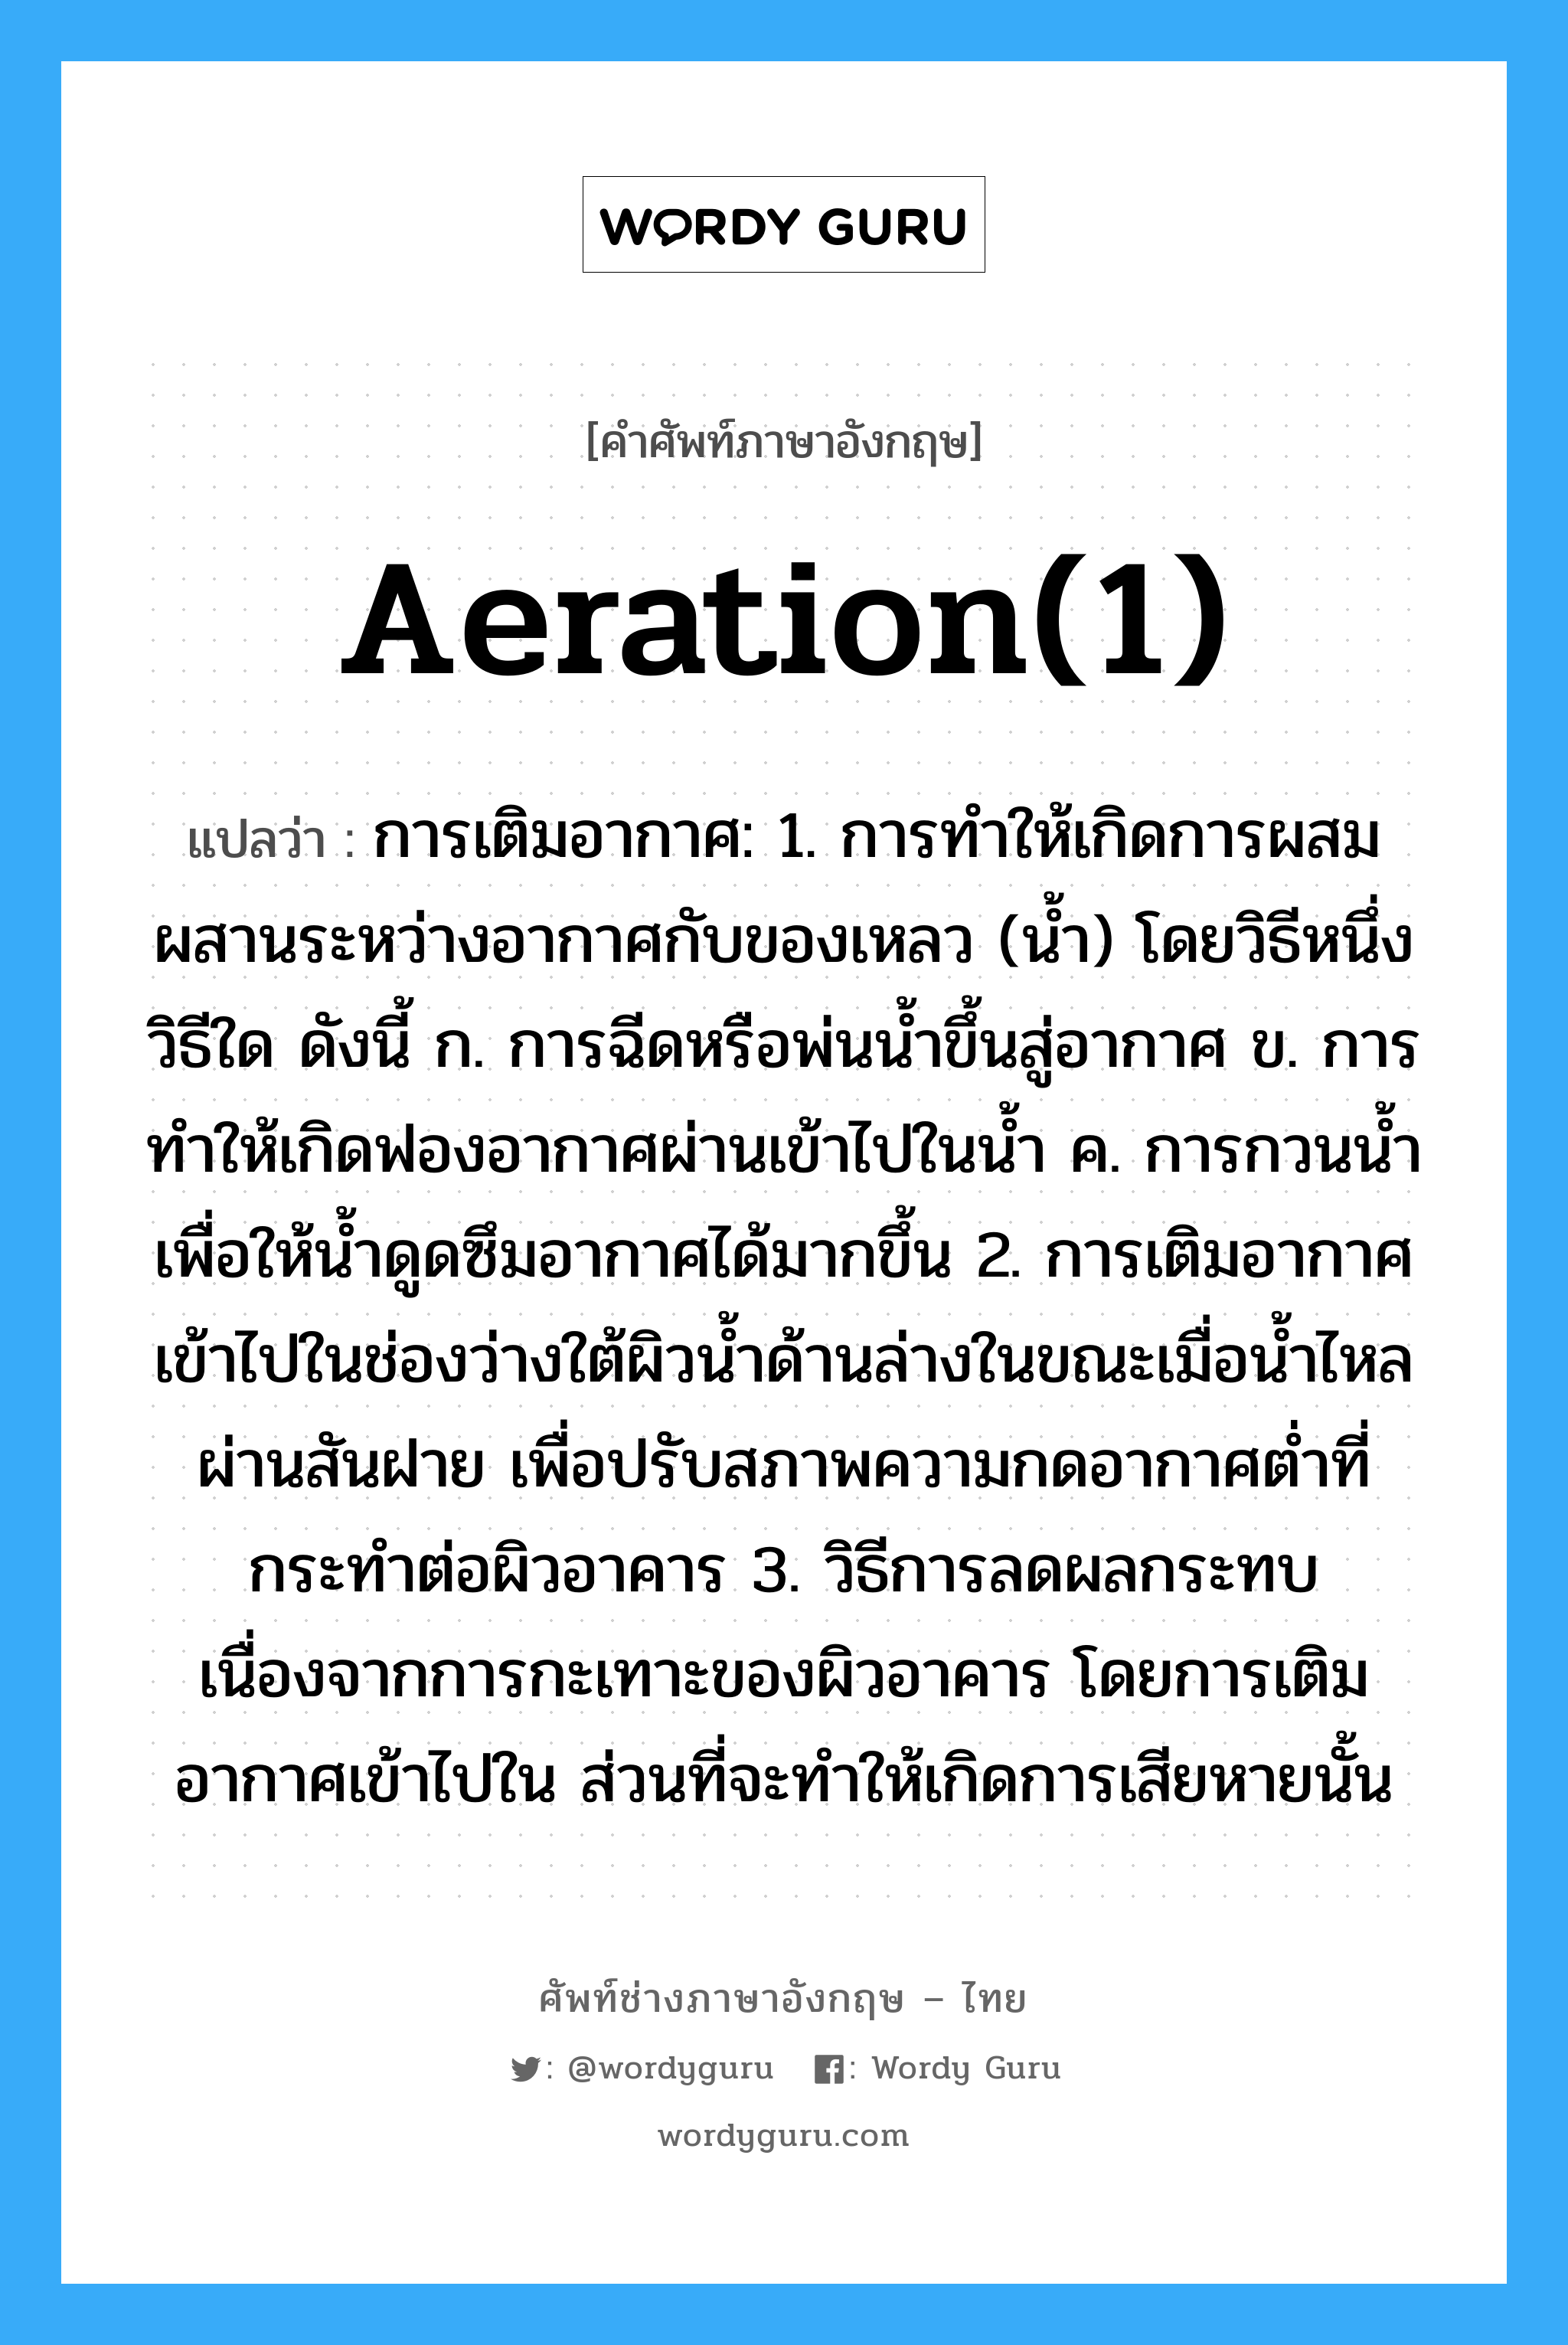 aeration(1) แปลว่า?, คำศัพท์ช่างภาษาอังกฤษ - ไทย aeration(1) คำศัพท์ภาษาอังกฤษ aeration(1) แปลว่า การเติมอากาศ: 1. การทำให้เกิดการผสมผสานระหว่างอากาศกับของเหลว (น้ำ) โดยวิธีหนึ่งวิธีใด ดังนี้ ก. การฉีดหรือพ่นน้ำขึ้นสู่อากาศ ข. การทำให้เกิดฟองอากาศผ่านเข้าไปในน้ำ ค. การกวนน้ำเพื่อให้น้ำดูดซึมอากาศได้มากขึ้น 2. การเติมอากาศเข้าไปในช่องว่างใต้ผิวน้ำด้านล่างในขณะเมื่อน้ำไหลผ่านสันฝาย เพื่อปรับสภาพความกดอากาศต่ำที่กระทำต่อผิวอาคาร 3. วิธีการลดผลกระทบเนื่องจากการกะเทาะของผิวอาคาร โดยการเติมอากาศเข้าไปใน ส่วนที่จะทำให้เกิดการเสียหายนั้น